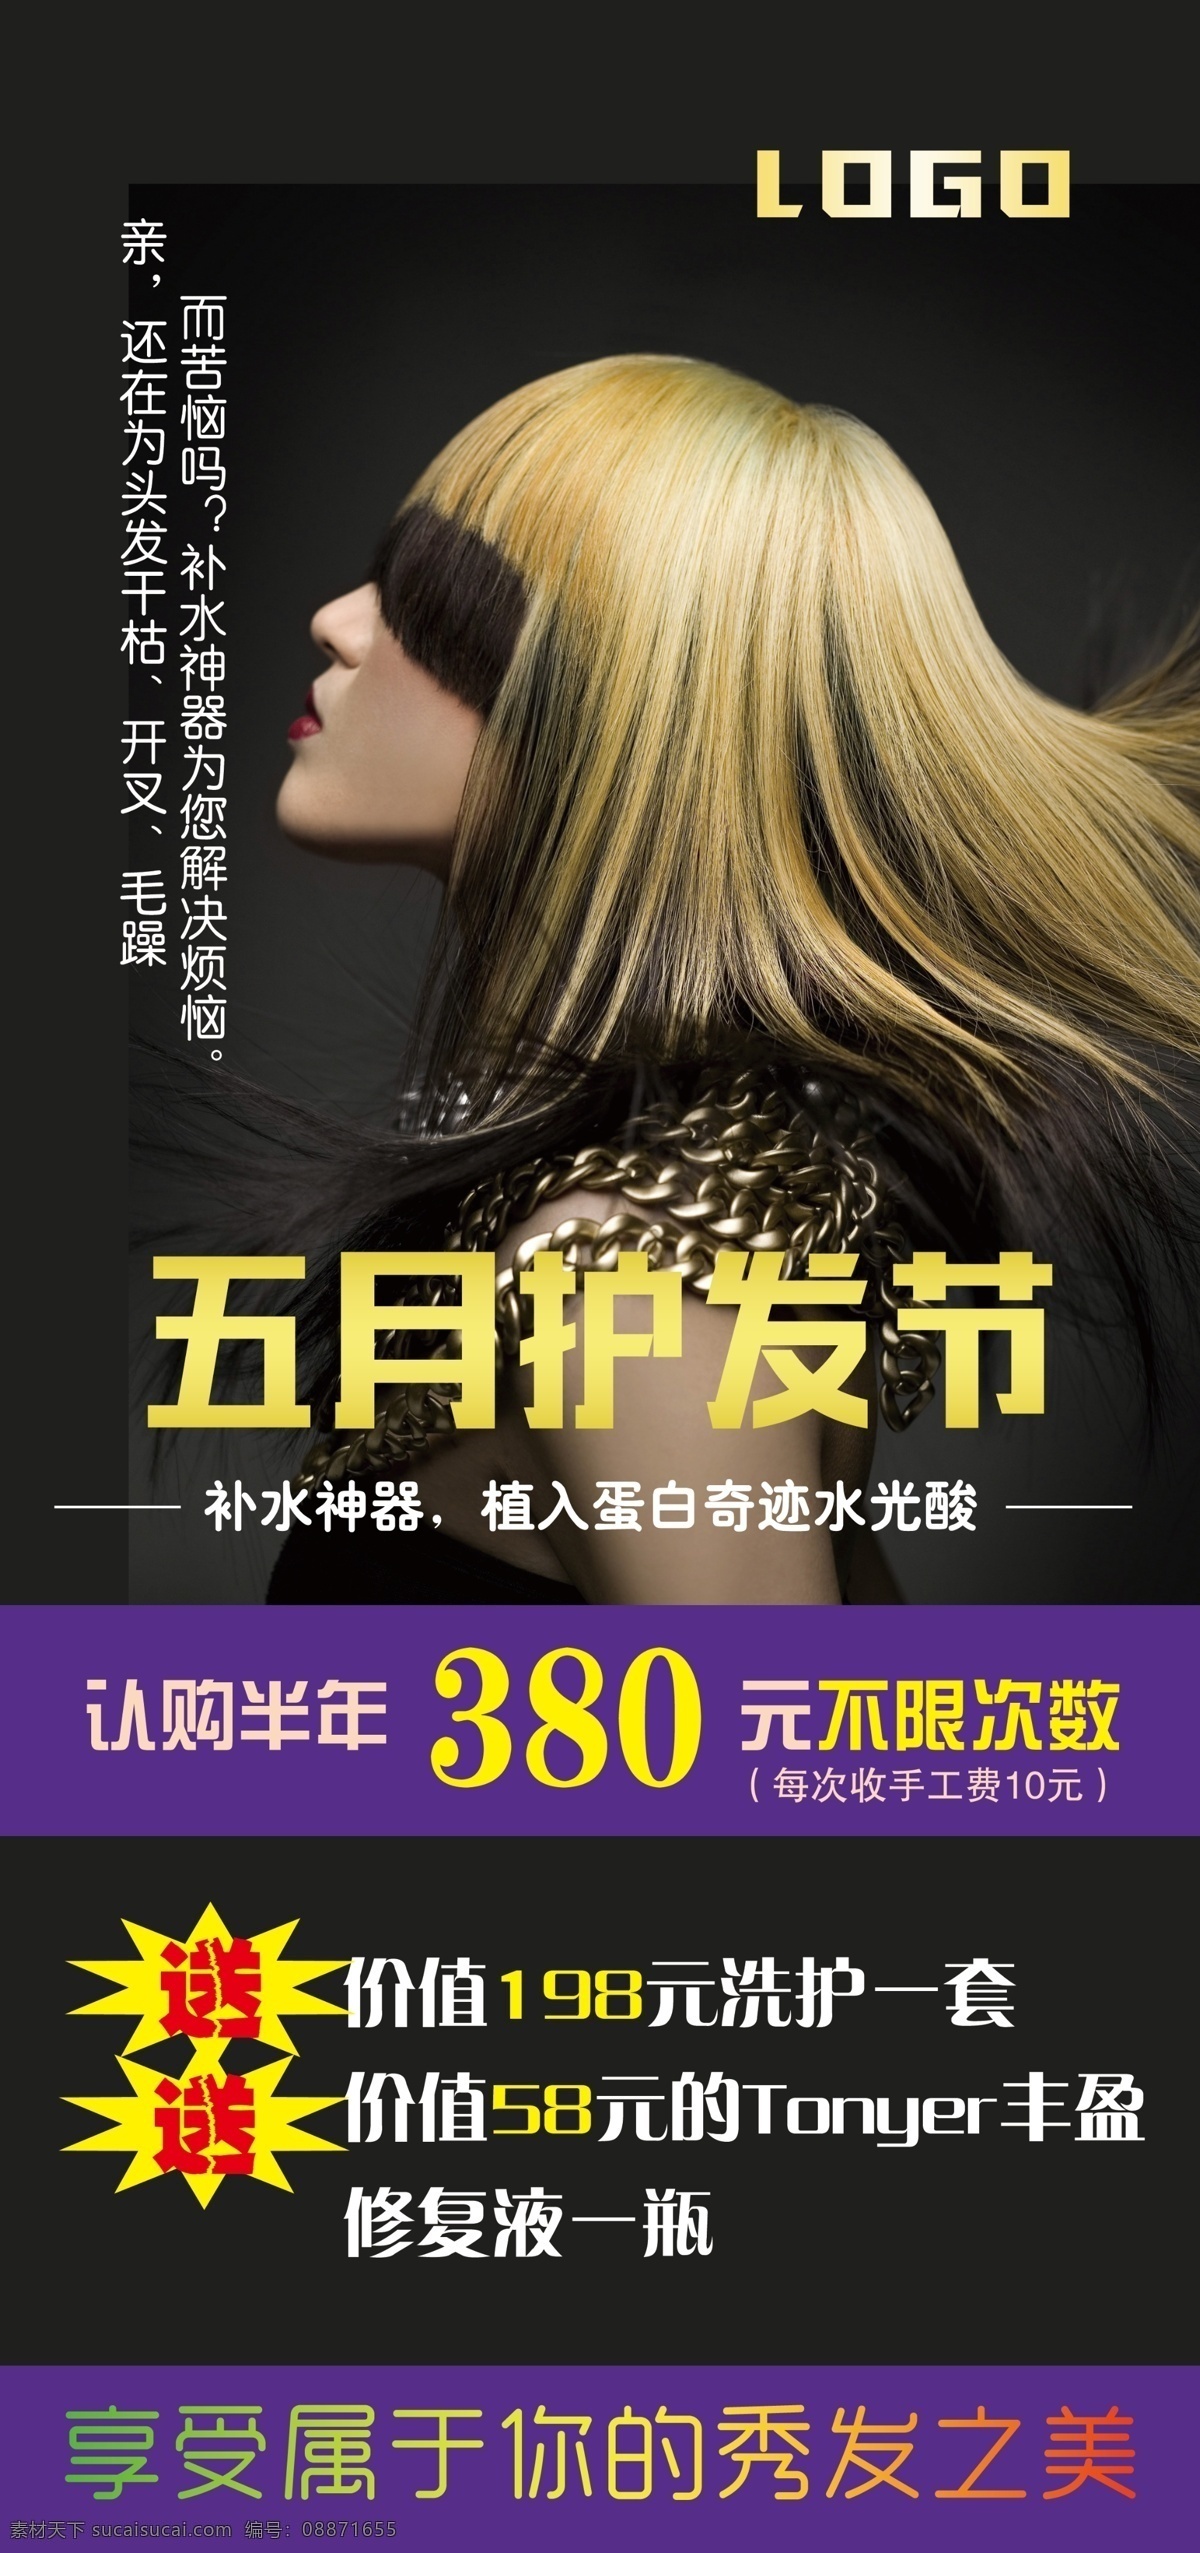 五月护发节 优惠 免费 活动 美女 理发店 宣传 海报 展架 赠 黑色背景 模版